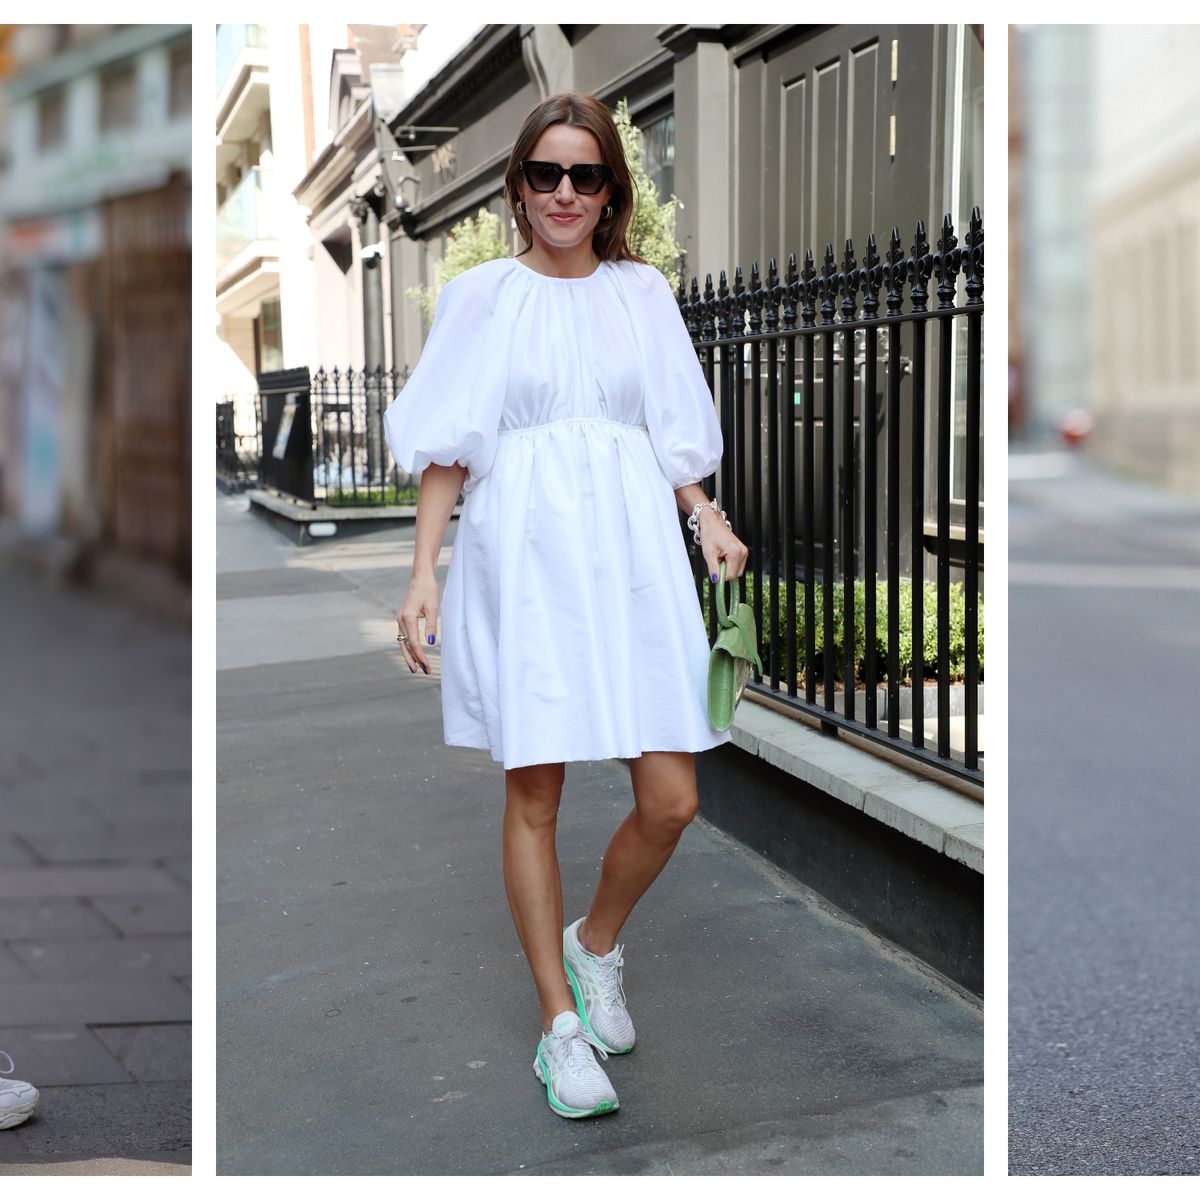 Cómo combinar bien los vestidos blancos en verano